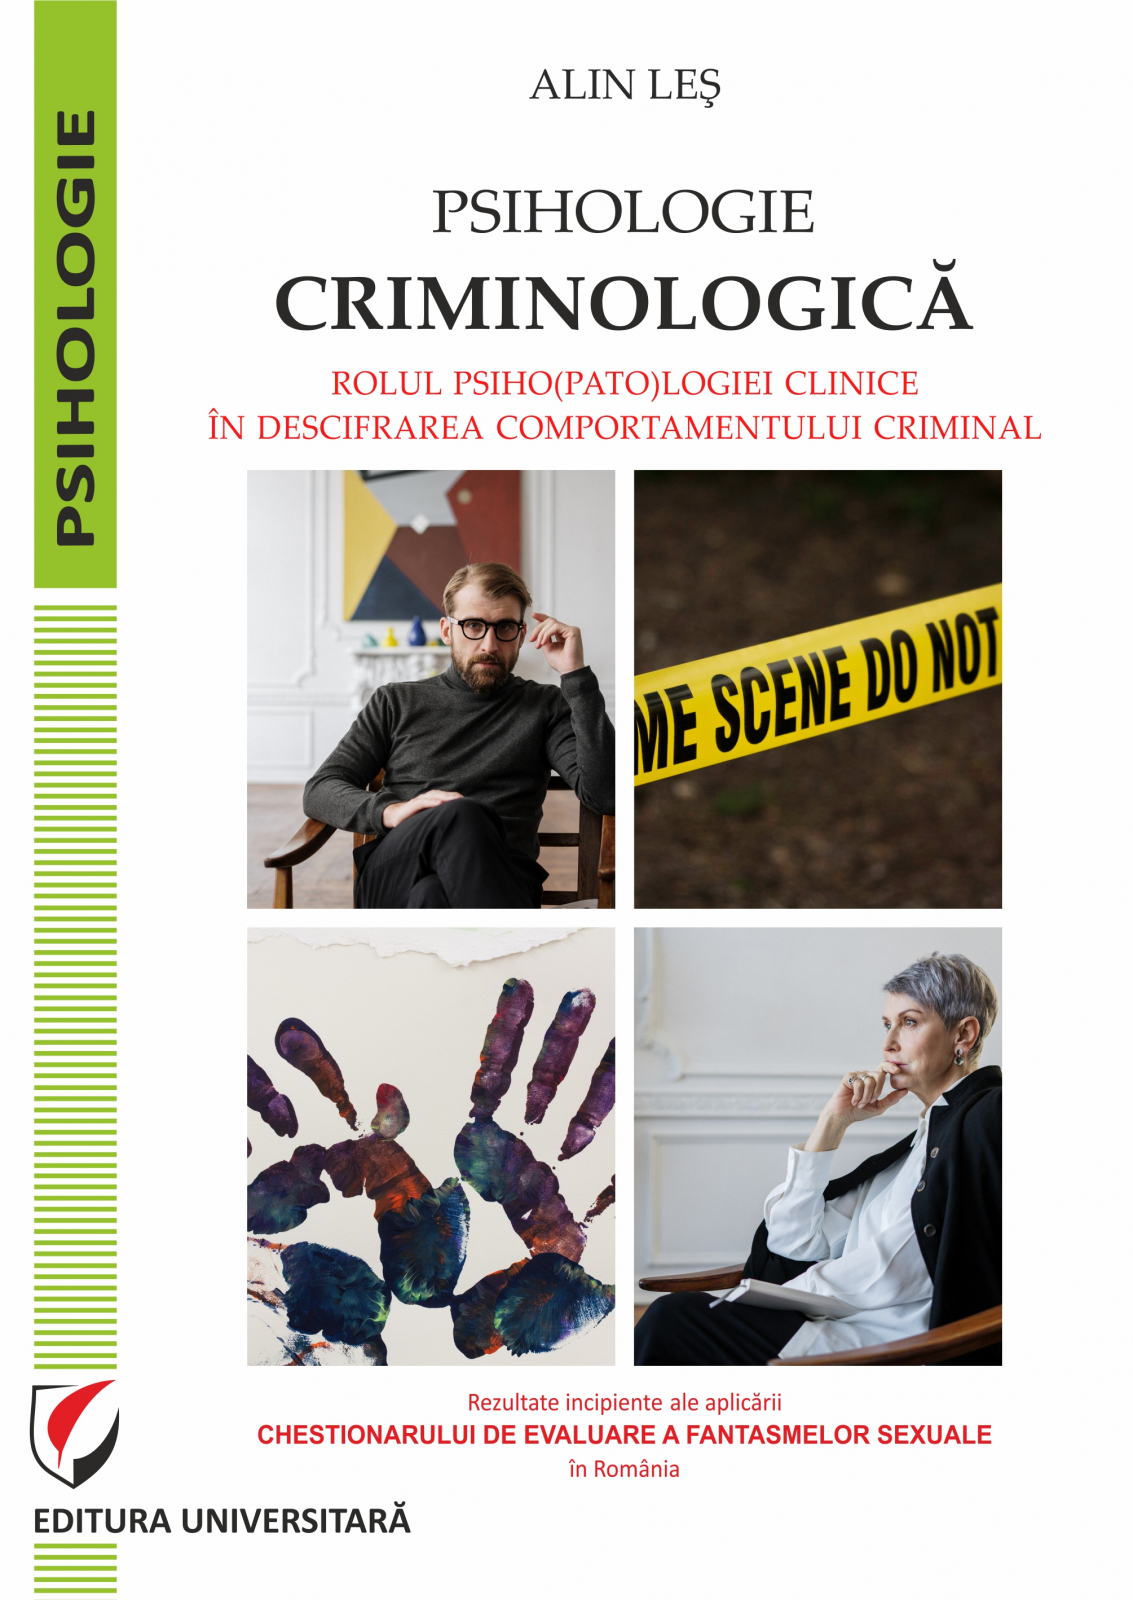 Psihologie criminologica | Alin Les​ carturesti.ro imagine 2022